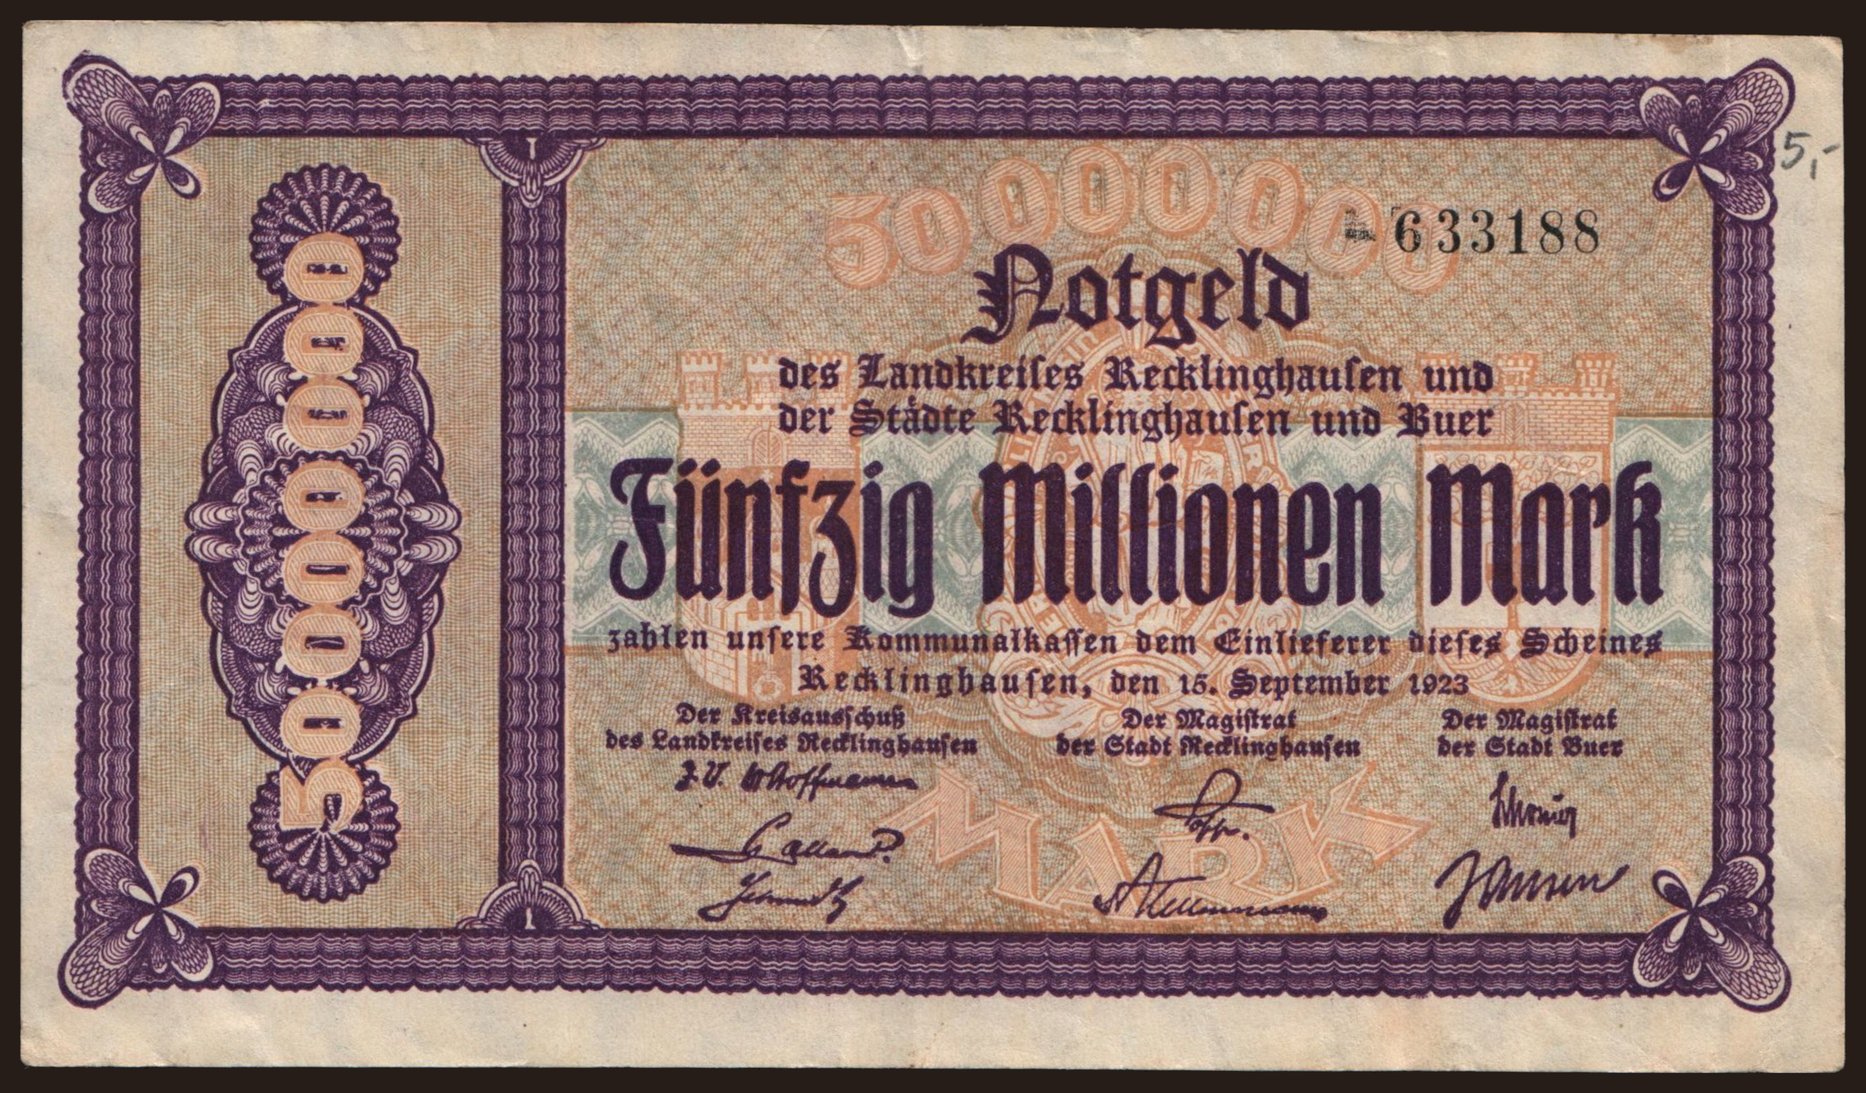 Recklinghausen/ Landkreis und Stadt gemeinsam, 50.000.000 Mark, 1923